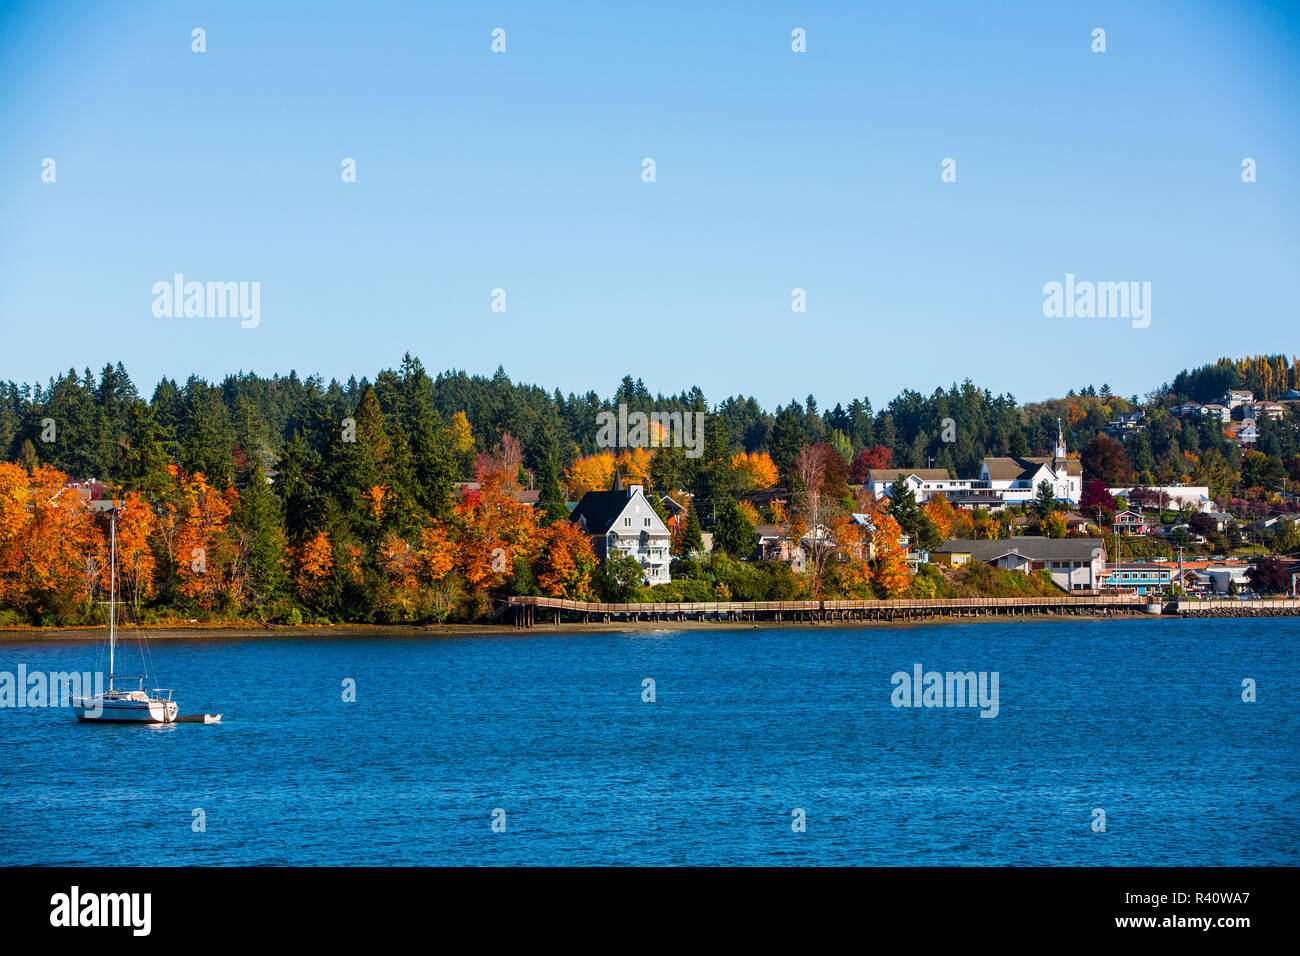 Poulsbo, nello Stato di Washington. Vista di acqua della città di Poulsbo, una barca a vela e alberi d'autunno Foto Stock